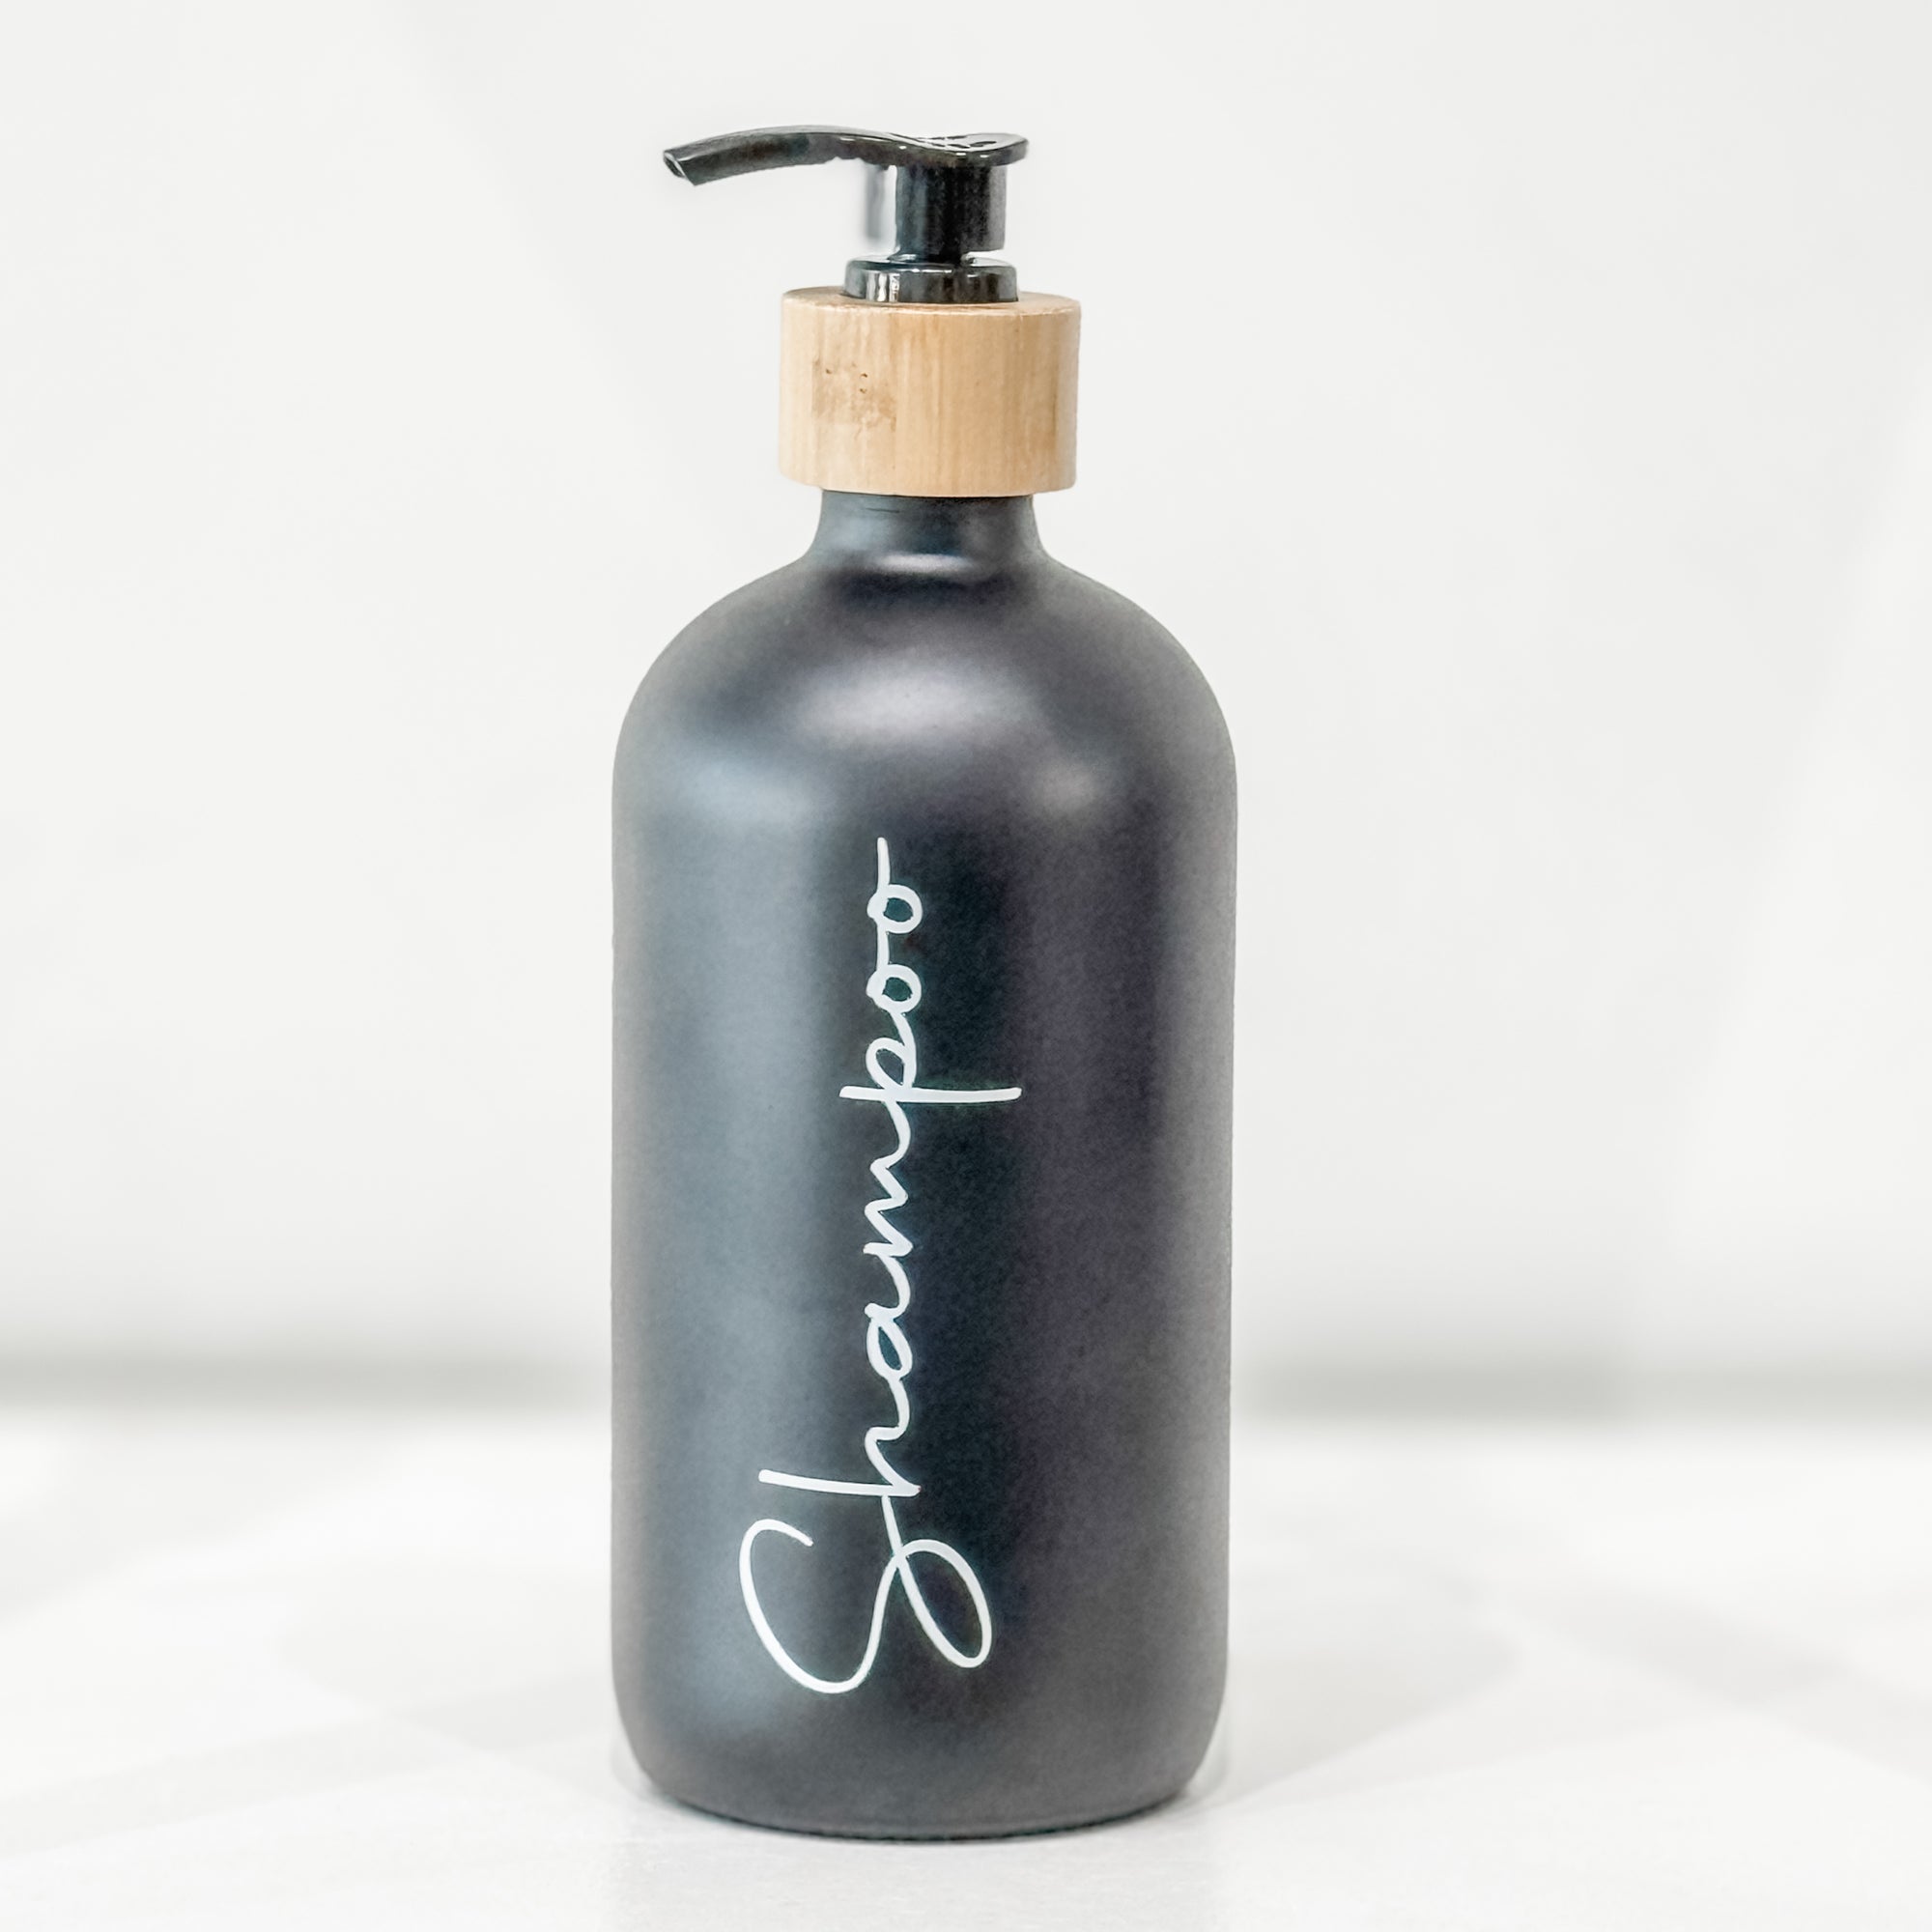 Refillable Glass Shampoo Bottles - Lemon & Lavender